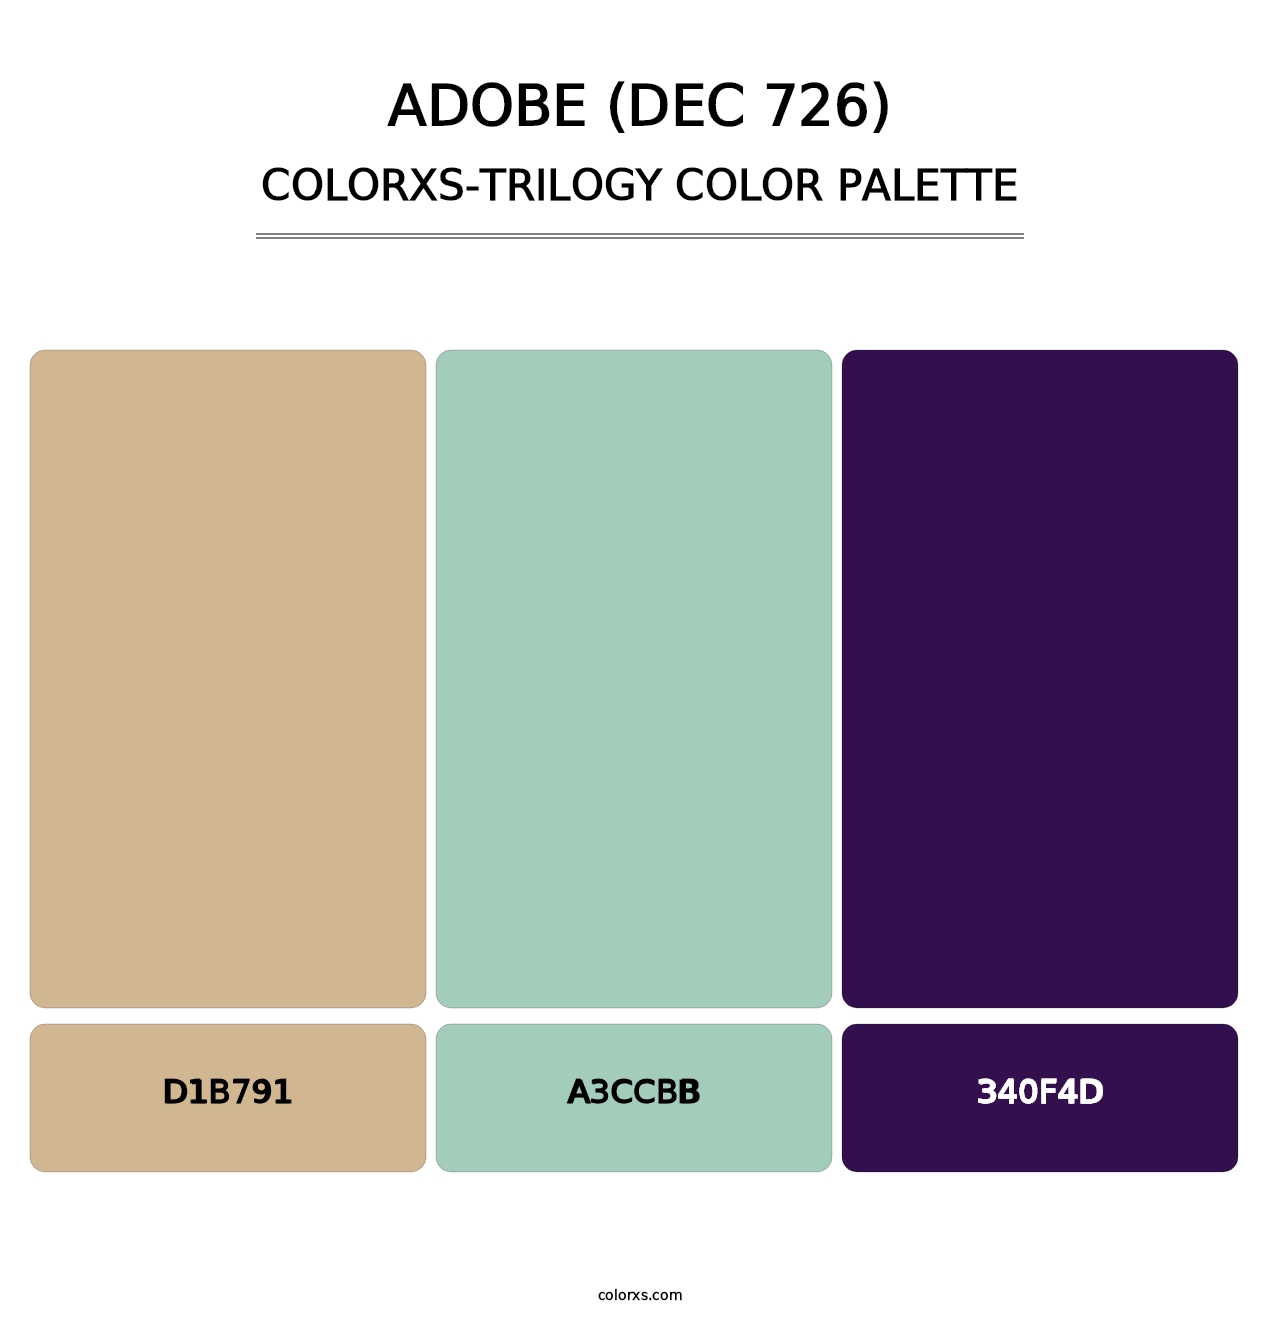 Adobe (DEC 726) - Colorxs Trilogy Palette